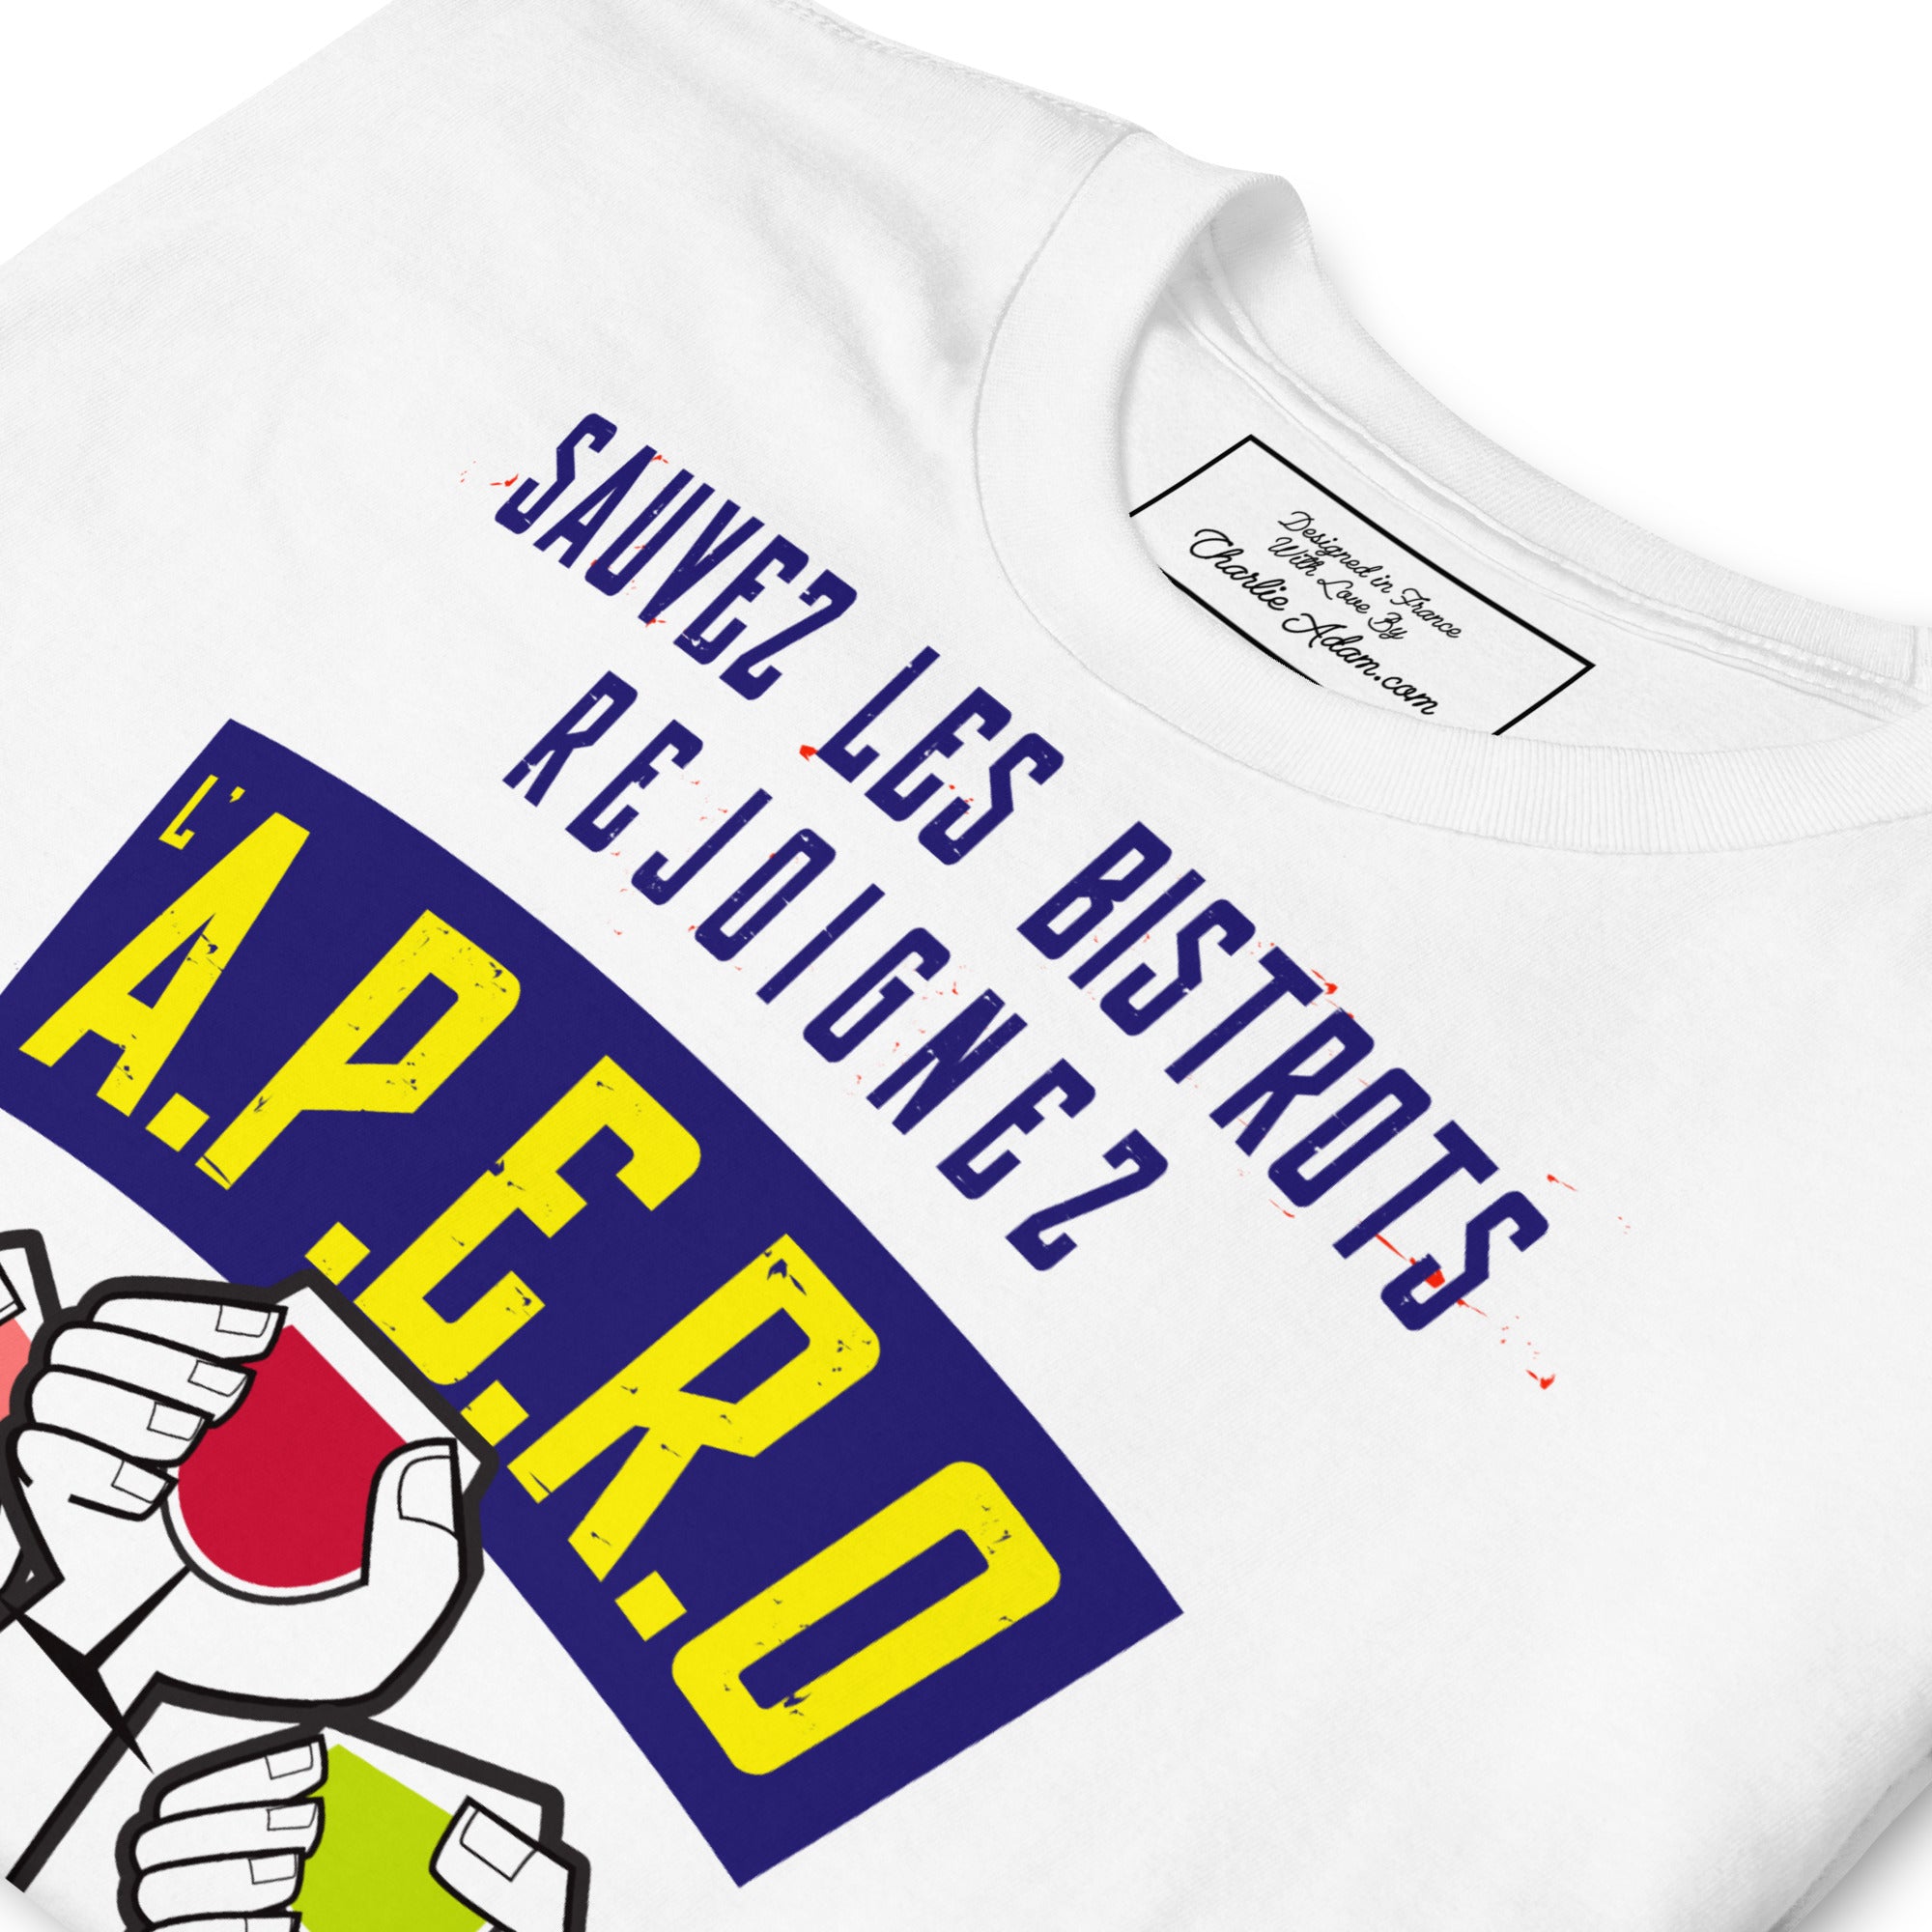 Softstyle Cotton T-Shirt Sauvez les Bistrots, rejoignez l'Apéro on light colors